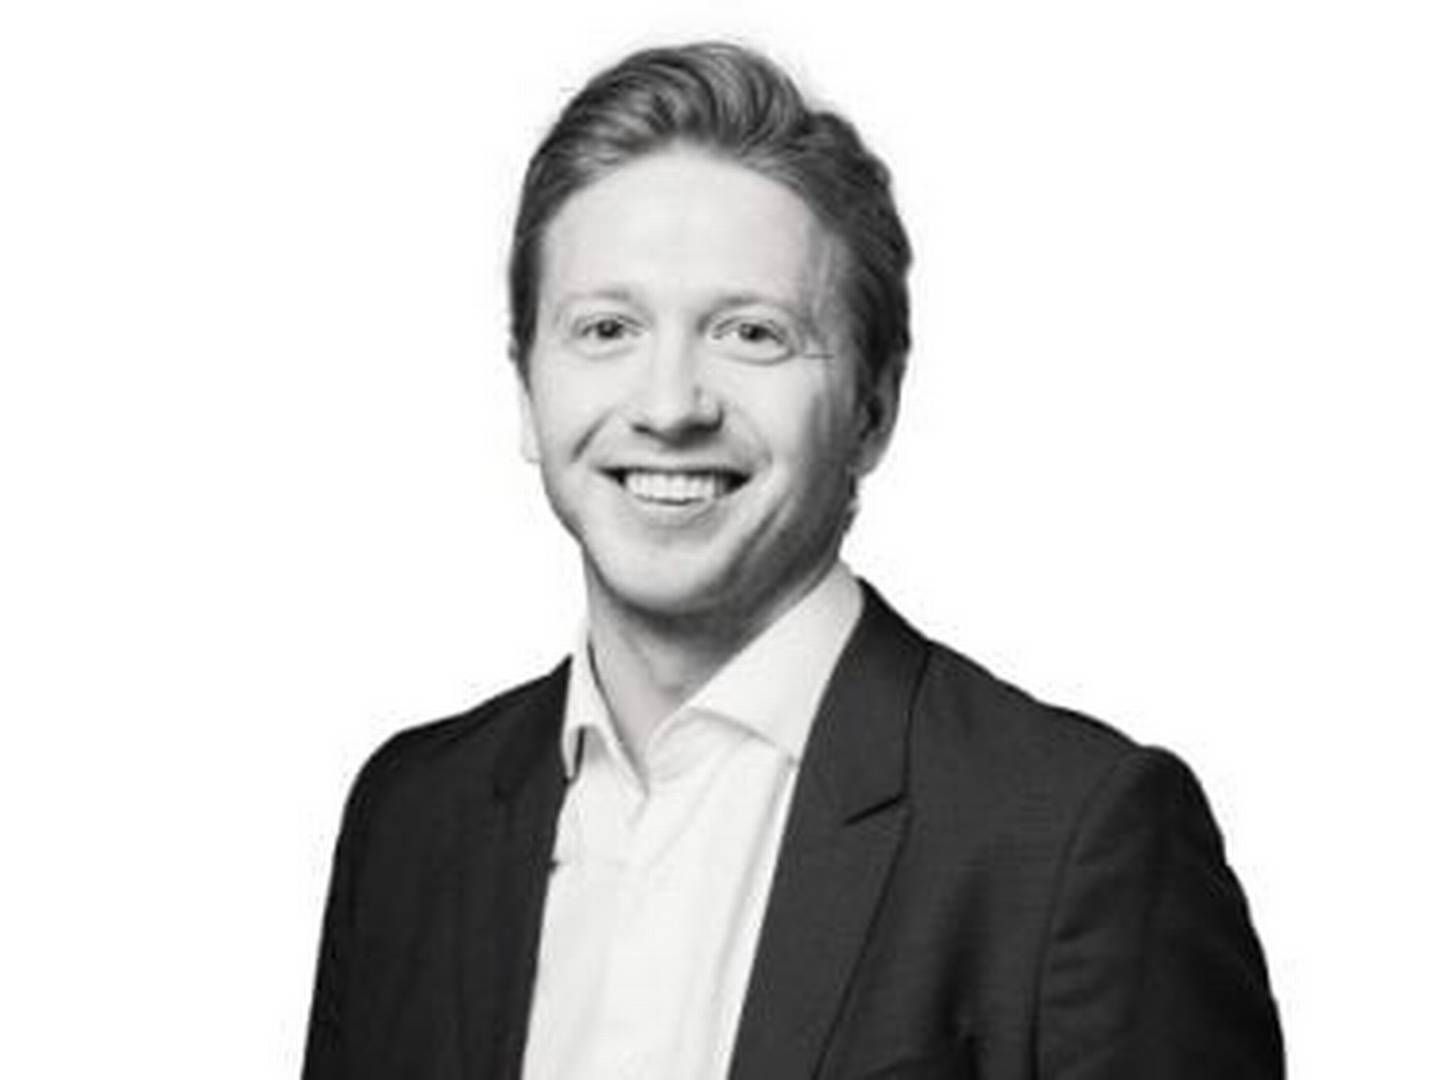 NY JOBB: Thomas Setsaas er ny advokat i Haavind og jobber med eiendomsrelaterte tvister, som advokatfirmaet merker en større pågang rundt. | Foto: Riisa & Co